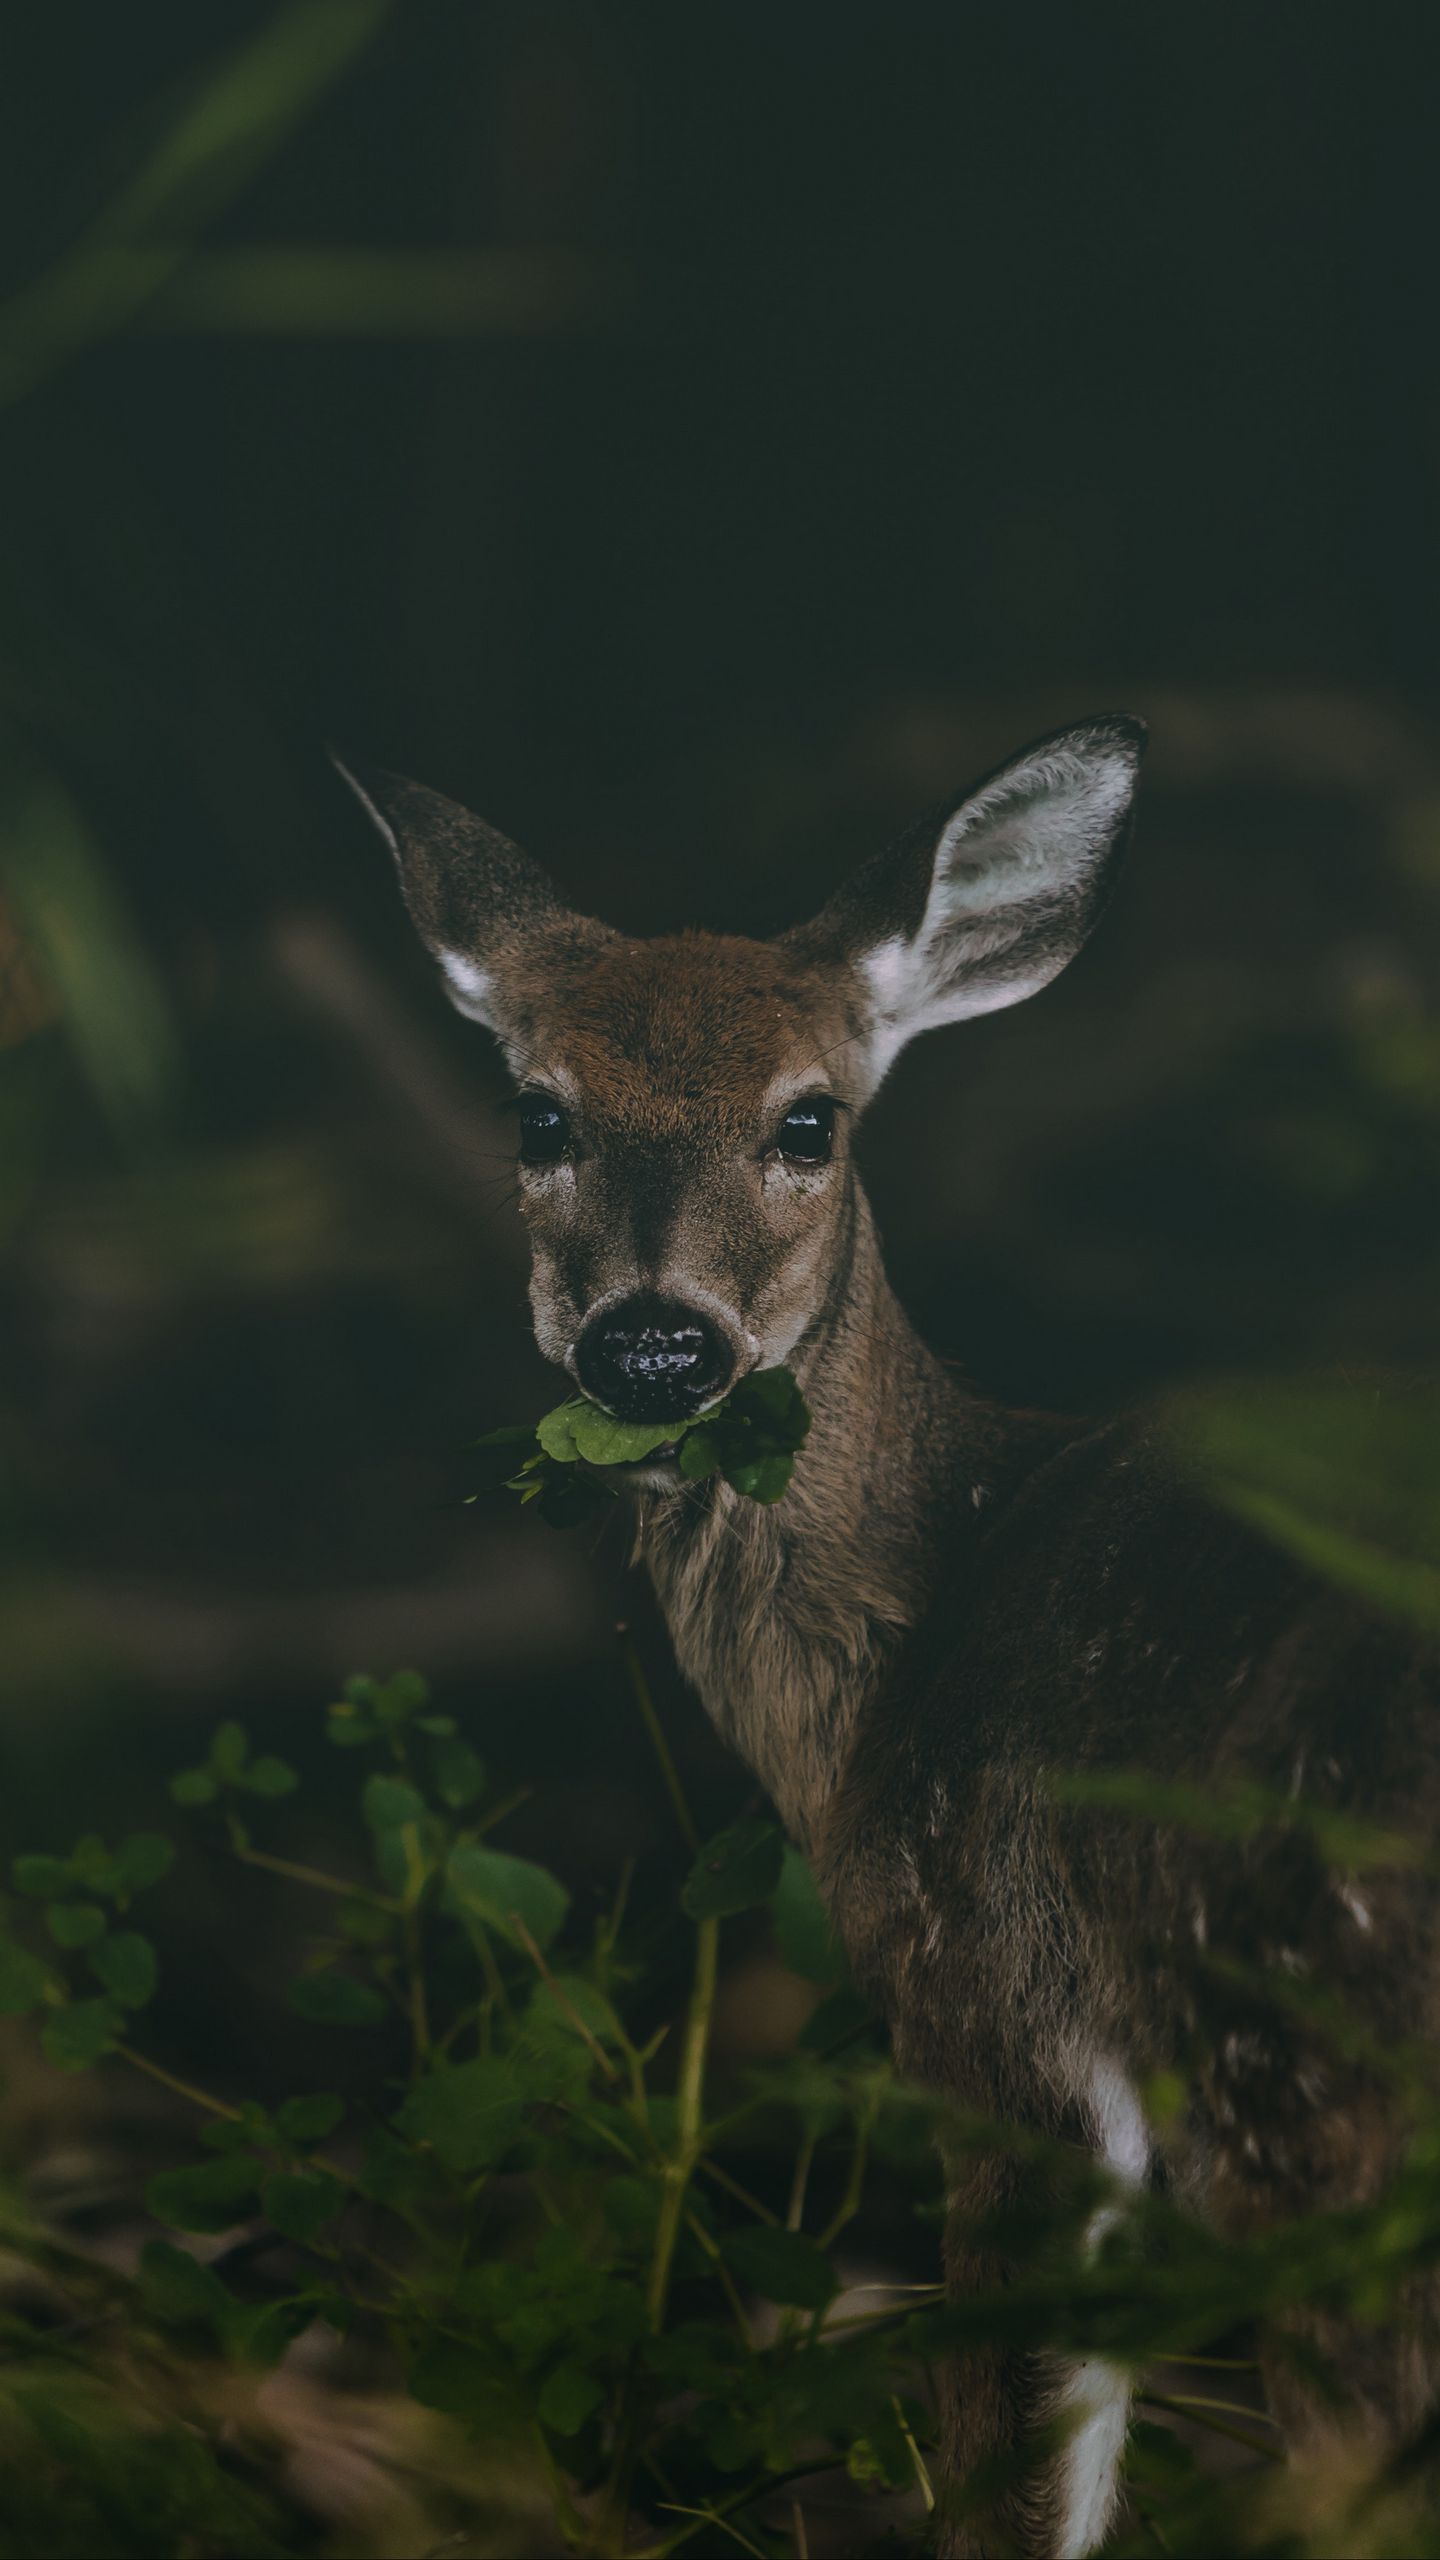 A deer is eating some green leaves - Deer